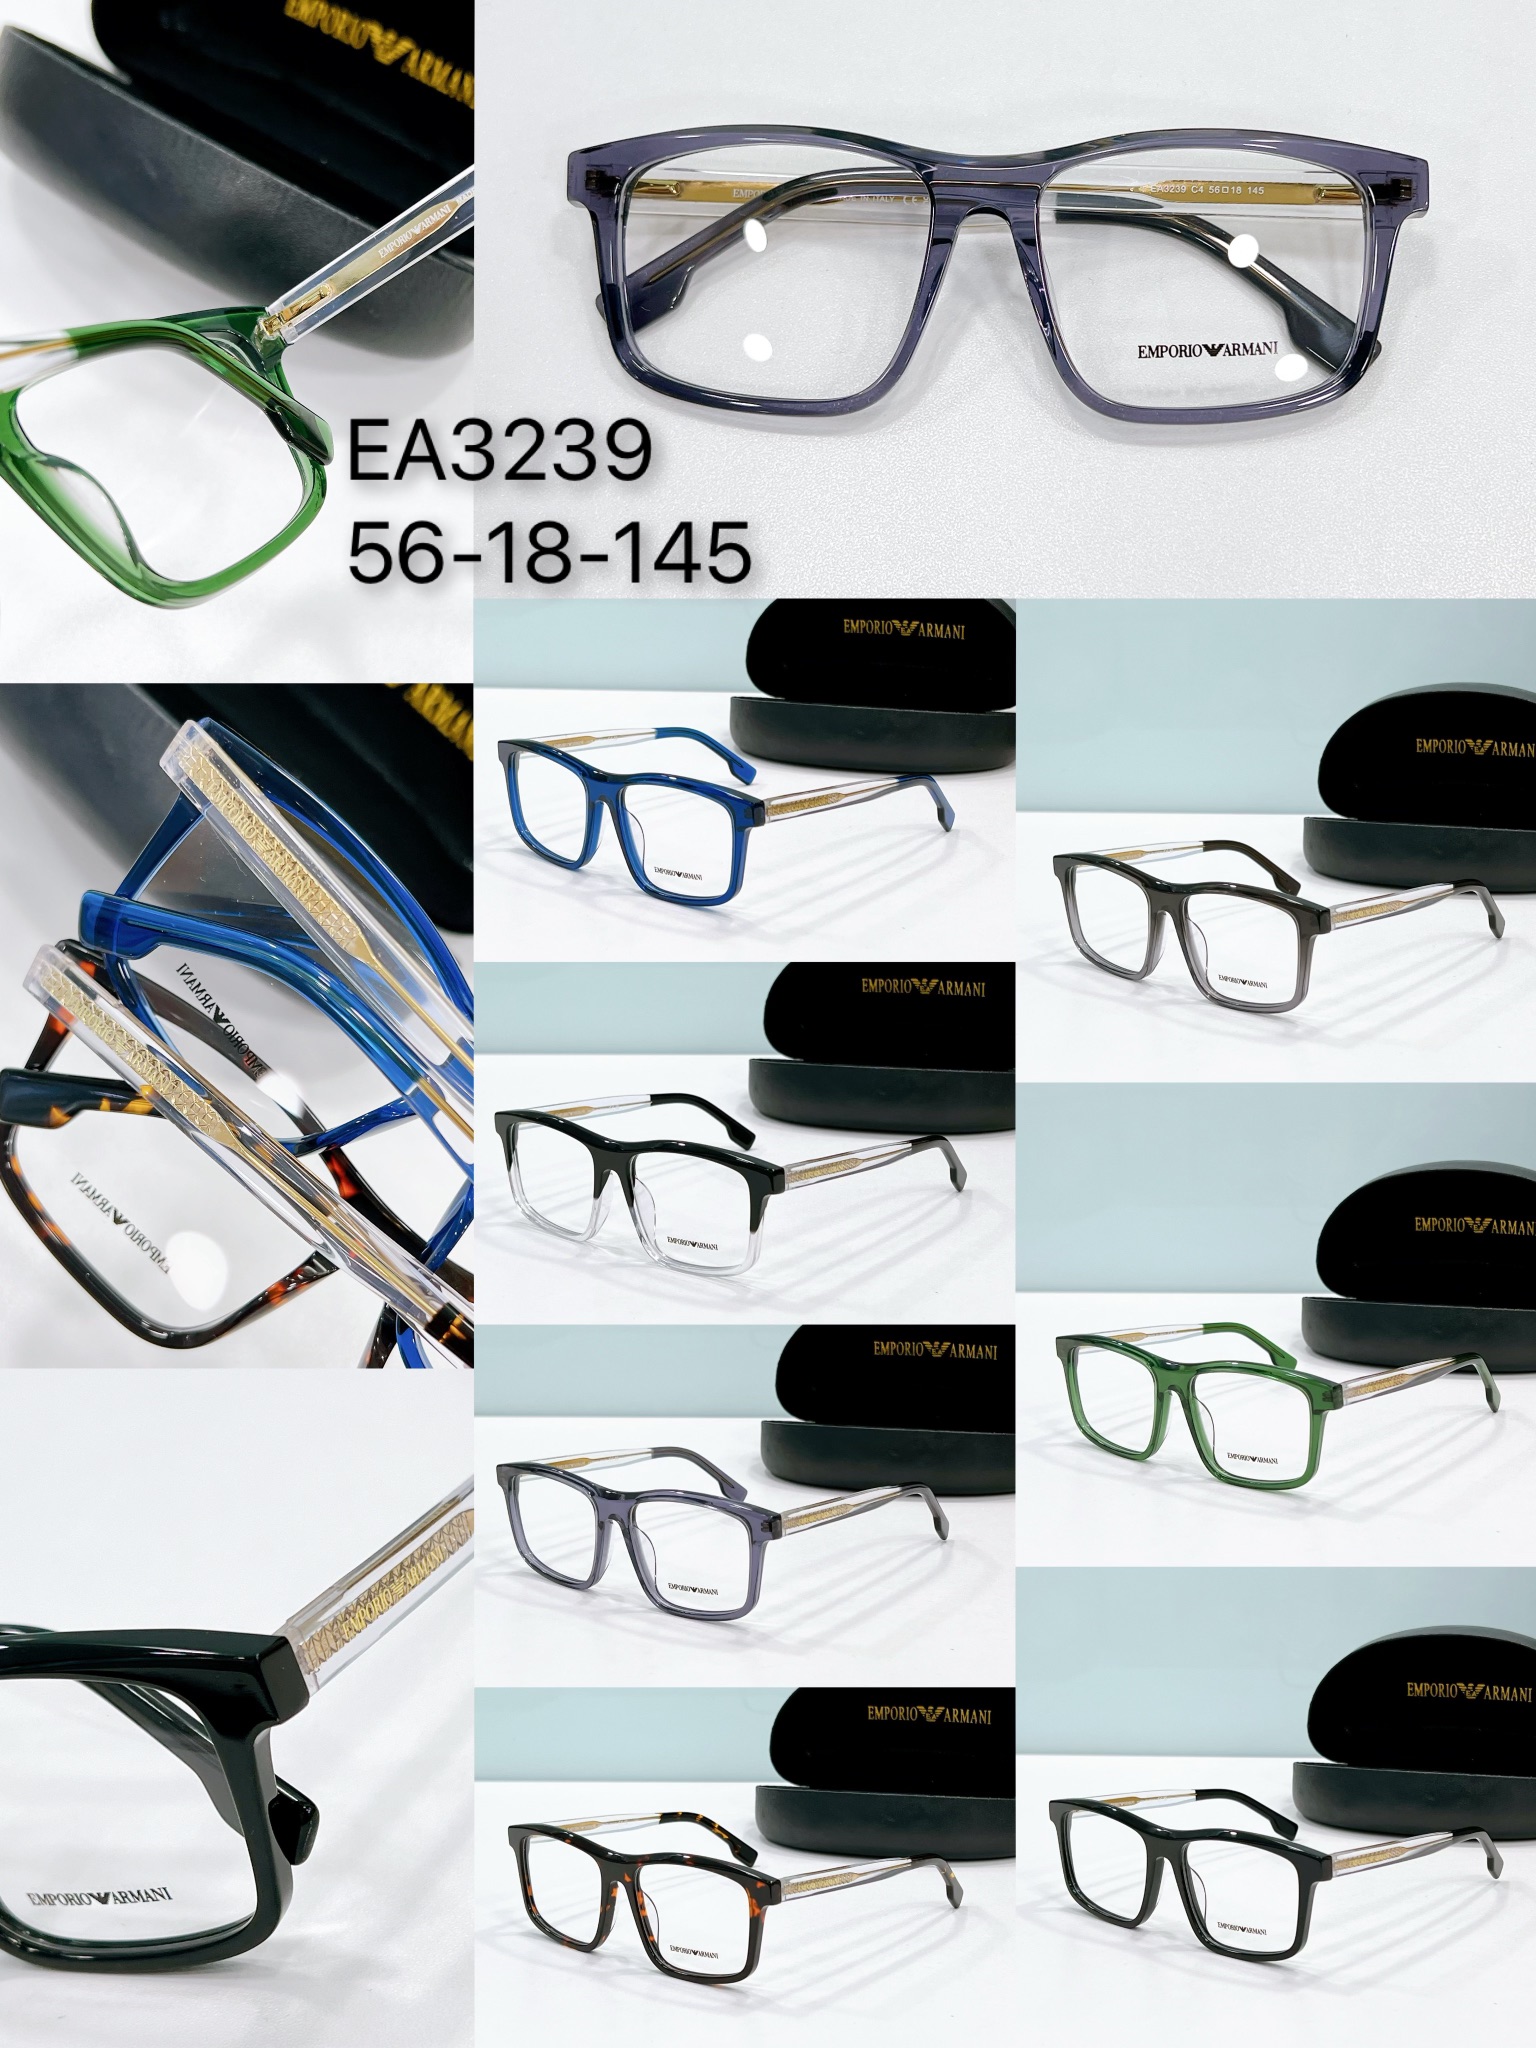 collection of replica glasses armani ea3239